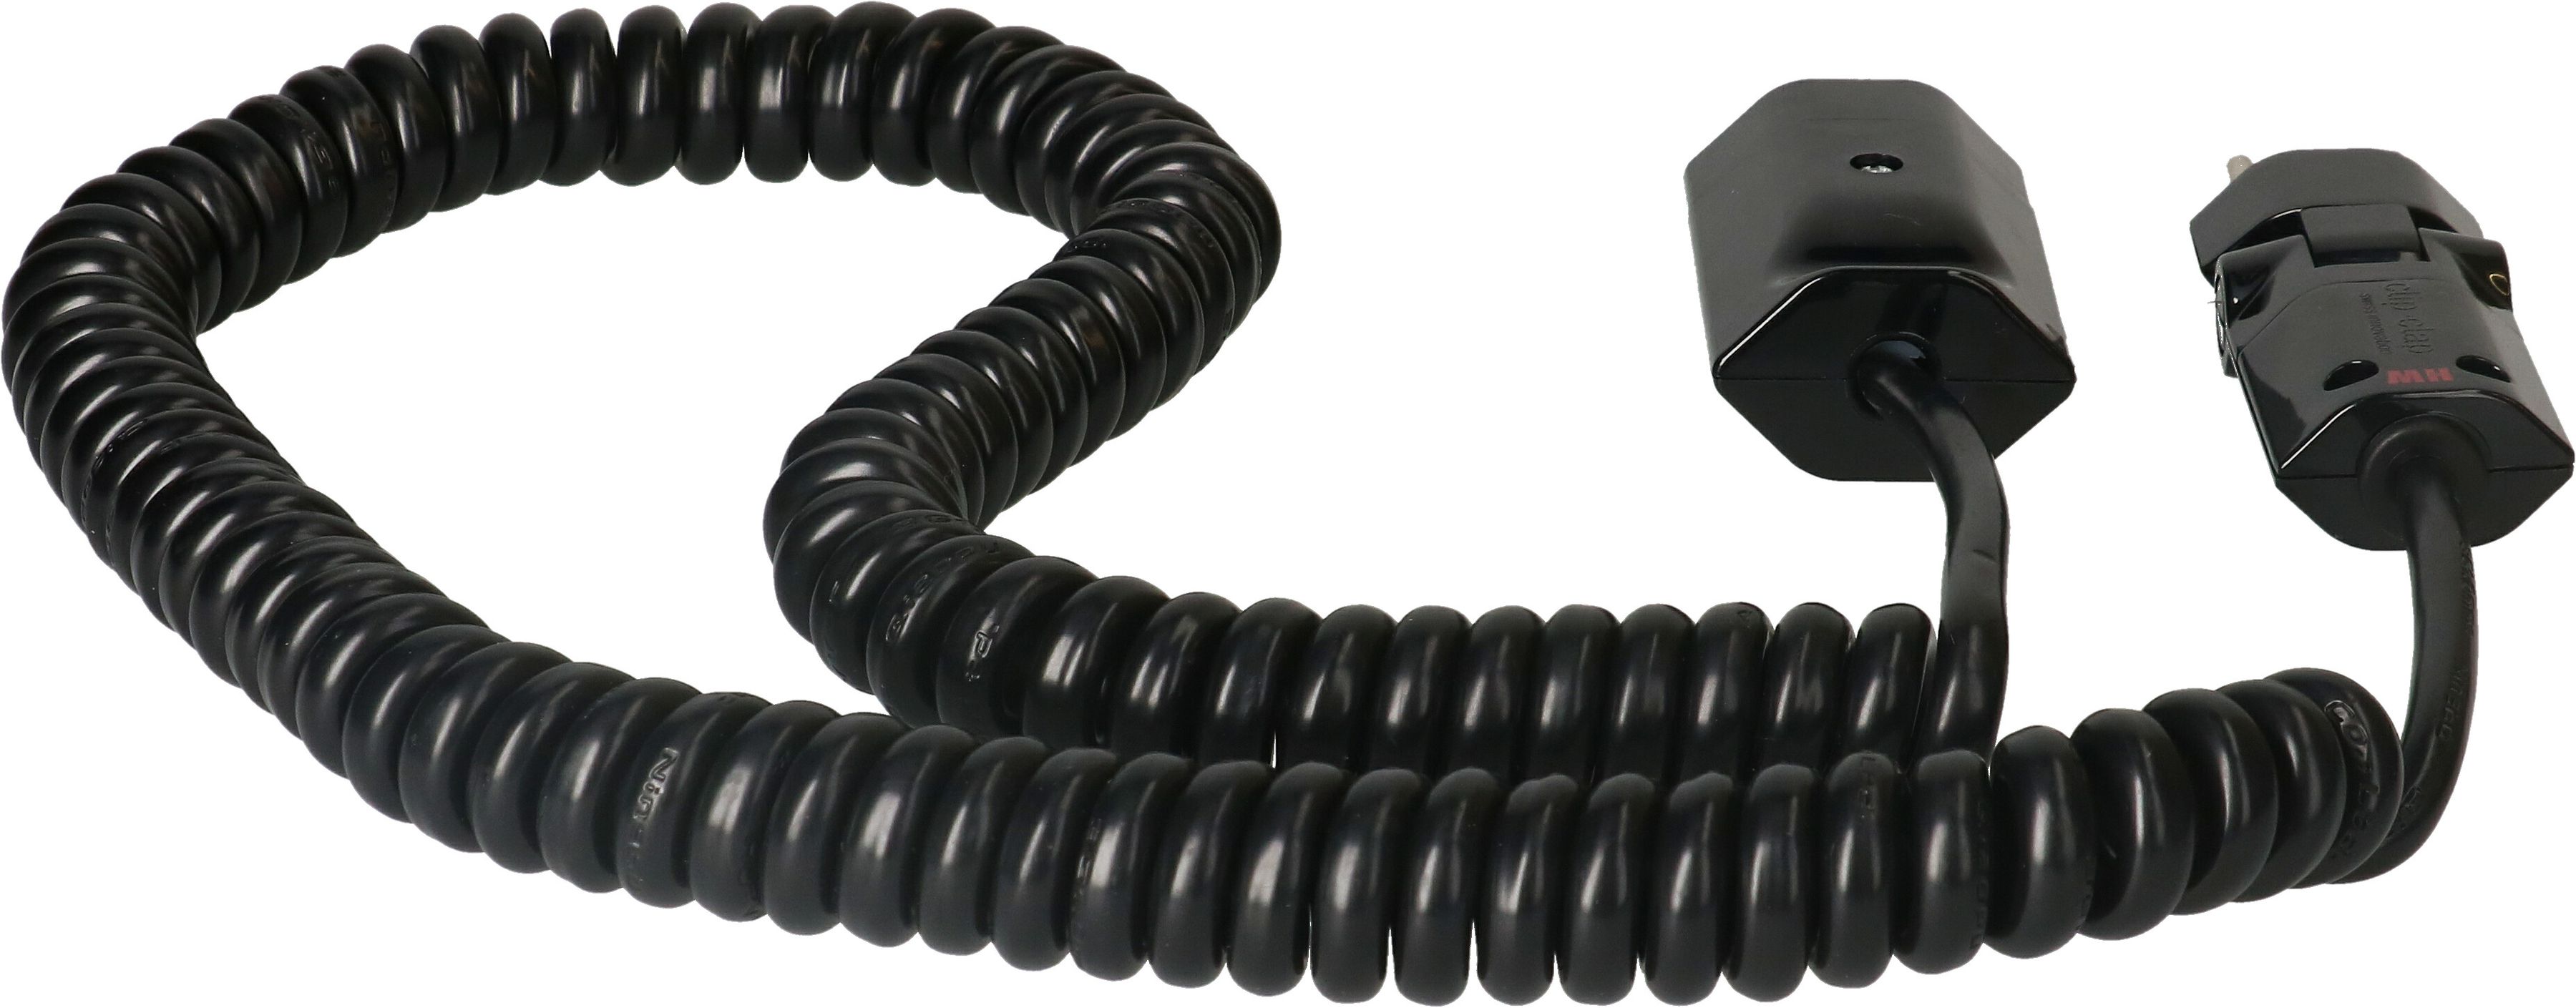 Spiral extension cable cordset H05VV-F3G1.0mm2 black